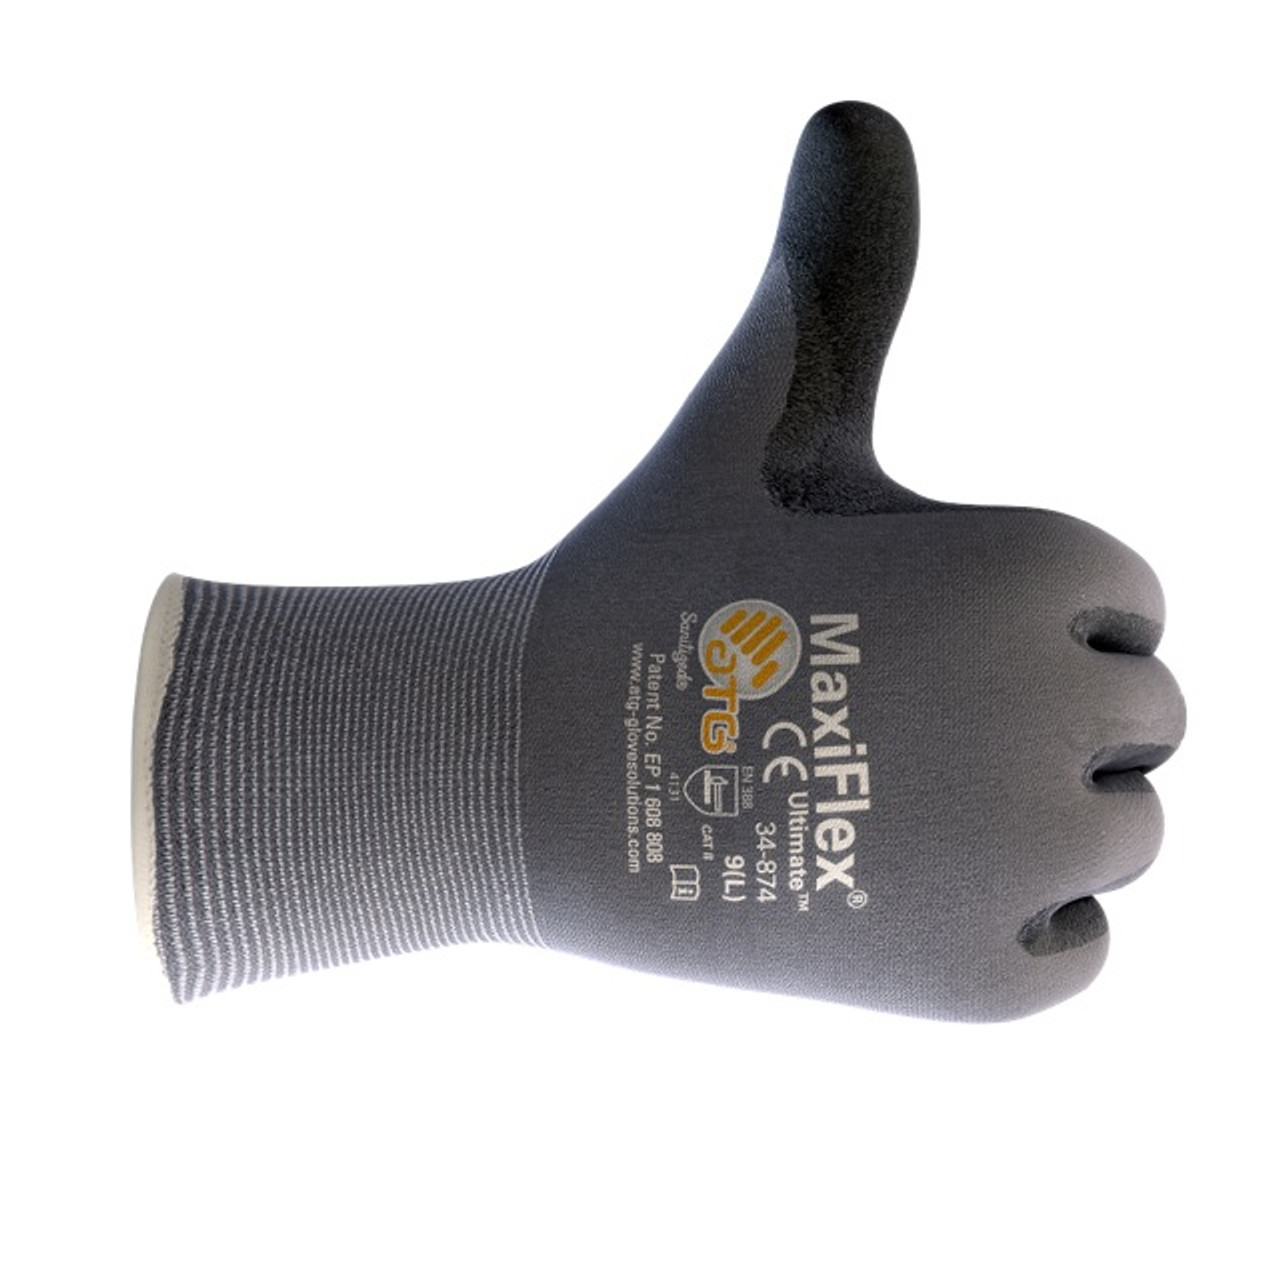 PIP MaxiFlex Ultimate 34-874 Gloves - Foam Nitrile Grip